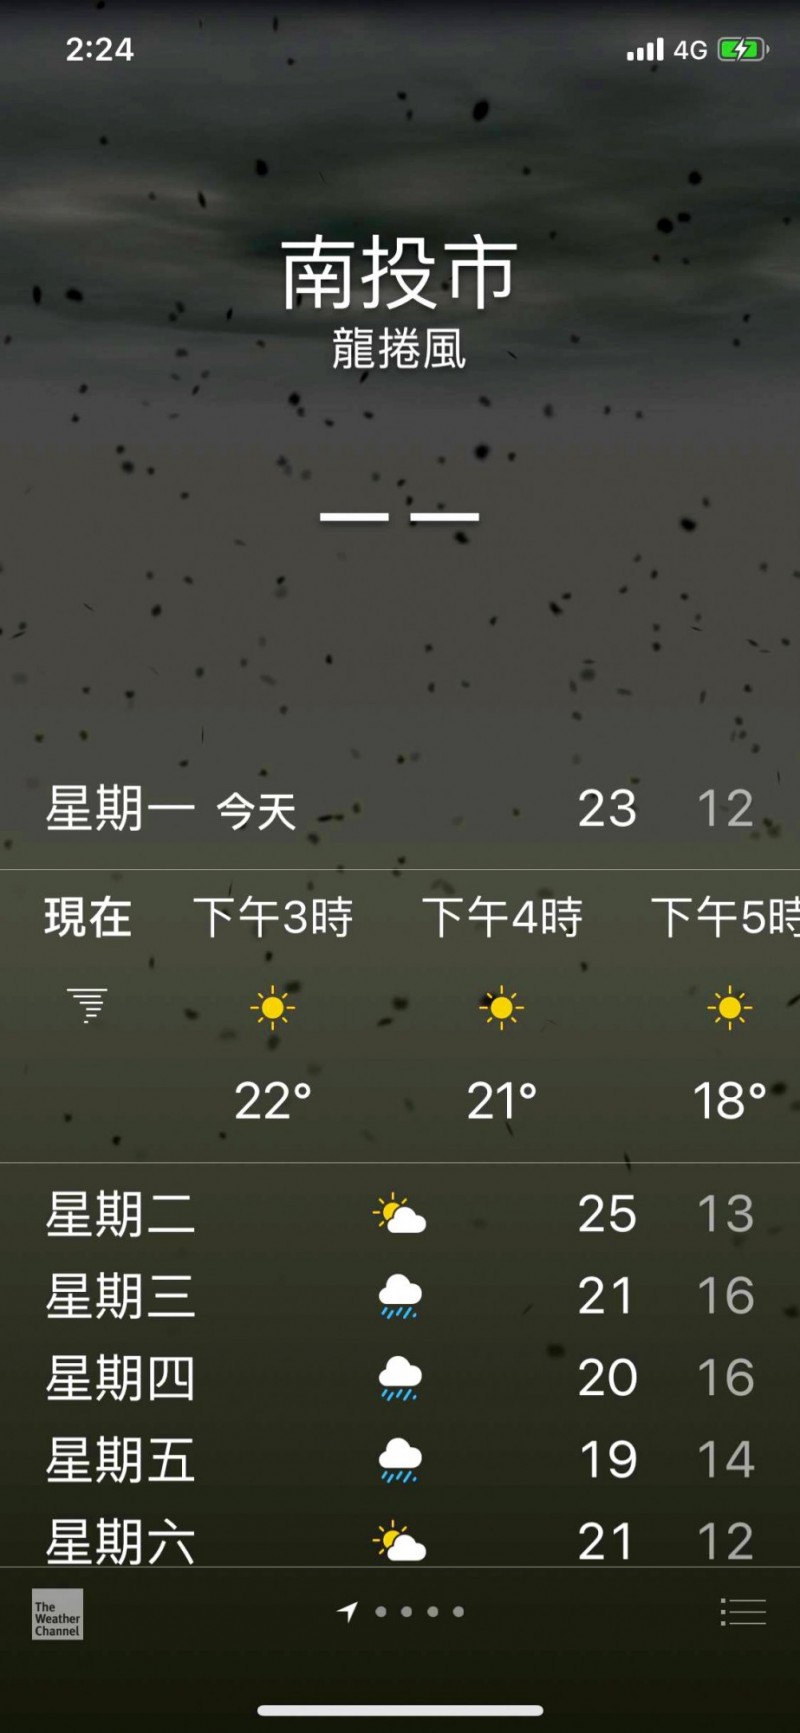 Iphone累了嗎 天氣app顯示 龍捲風 等1小時天氣晴朗 生活 自由時報電子報